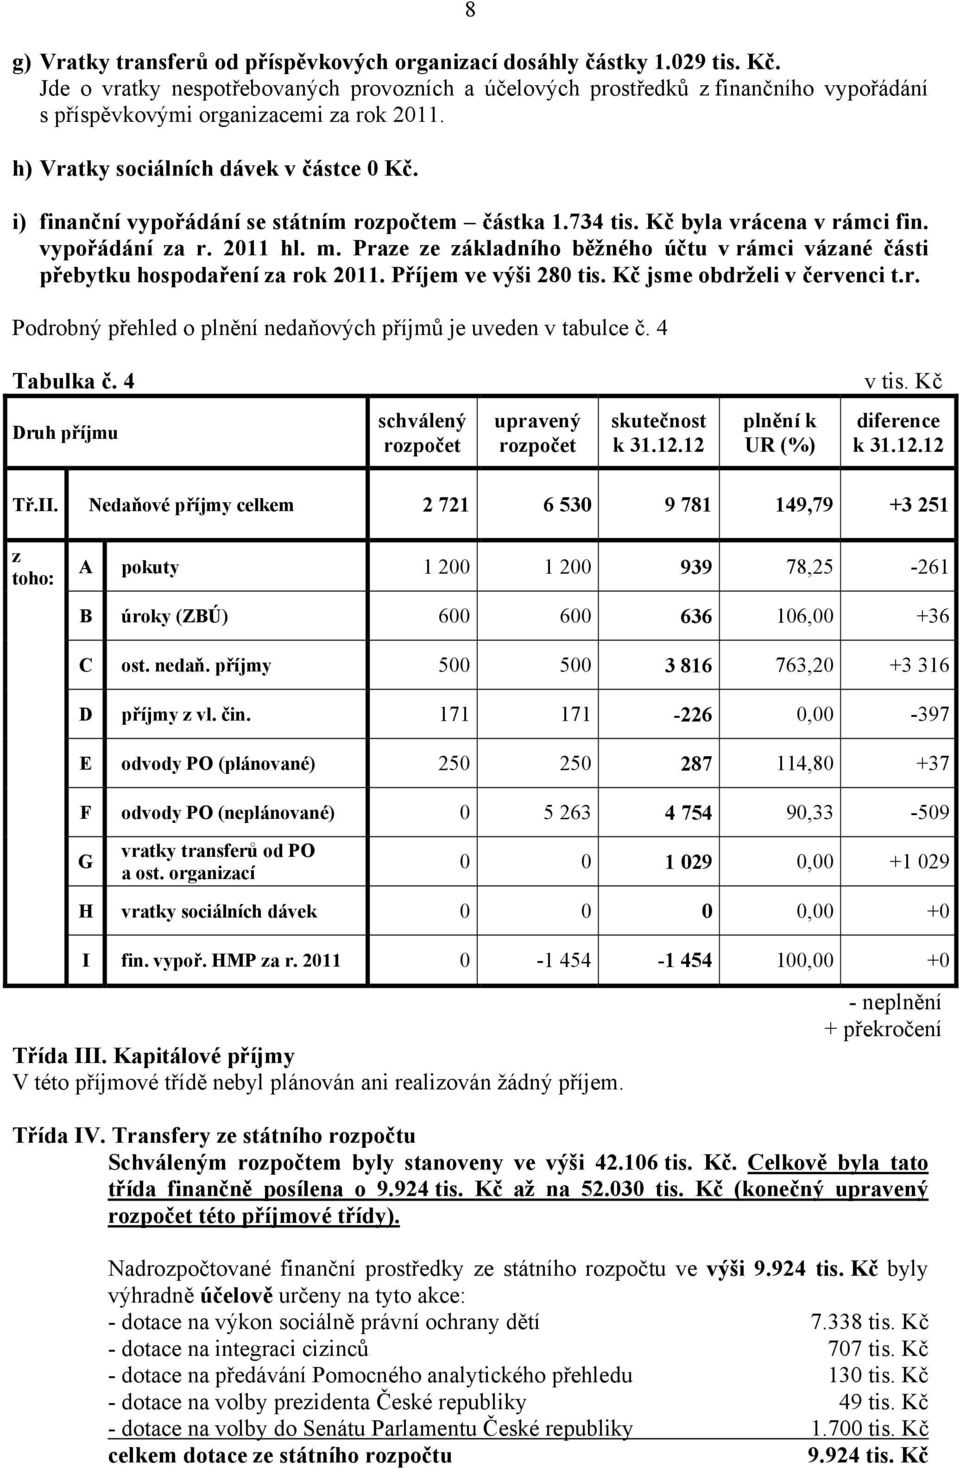 i) finanční vypořádání se státním rozpočtem částka 1.734 tis. Kč byla vrácena v rámci fin. vypořádání za r. 2011 hl. m.